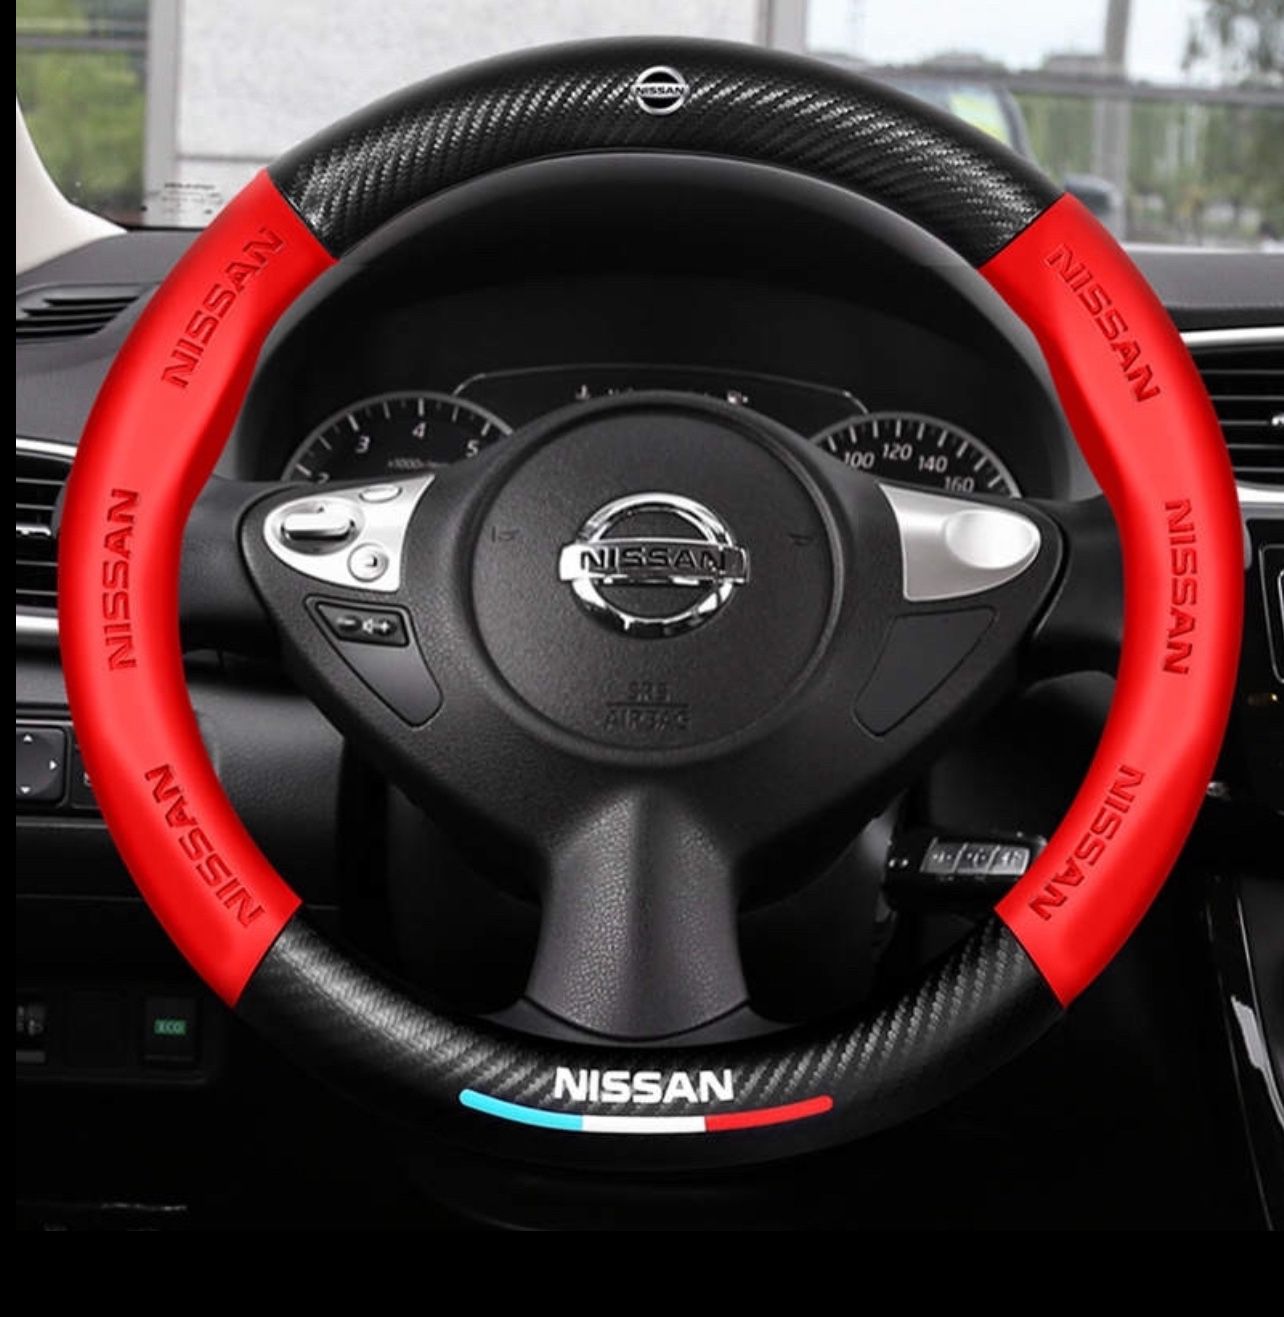 Nissan Steering Wheel Cover